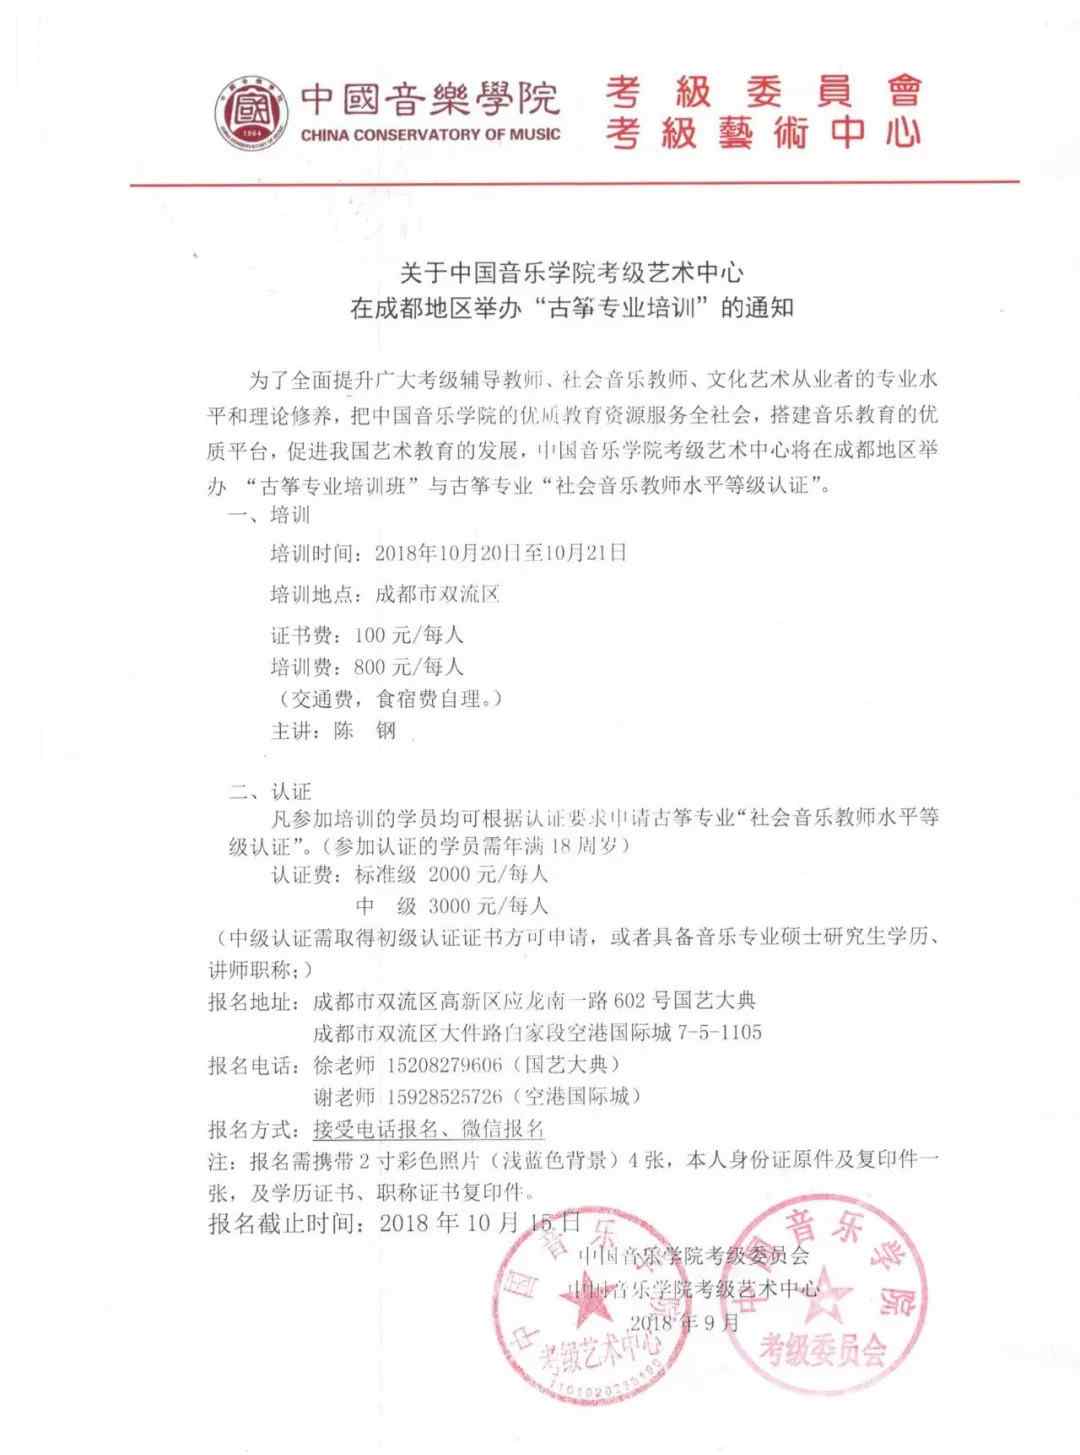 成都古筝培训 关于中国音乐学院考级艺术中心在成都地区举办“古筝专业培训”的通知